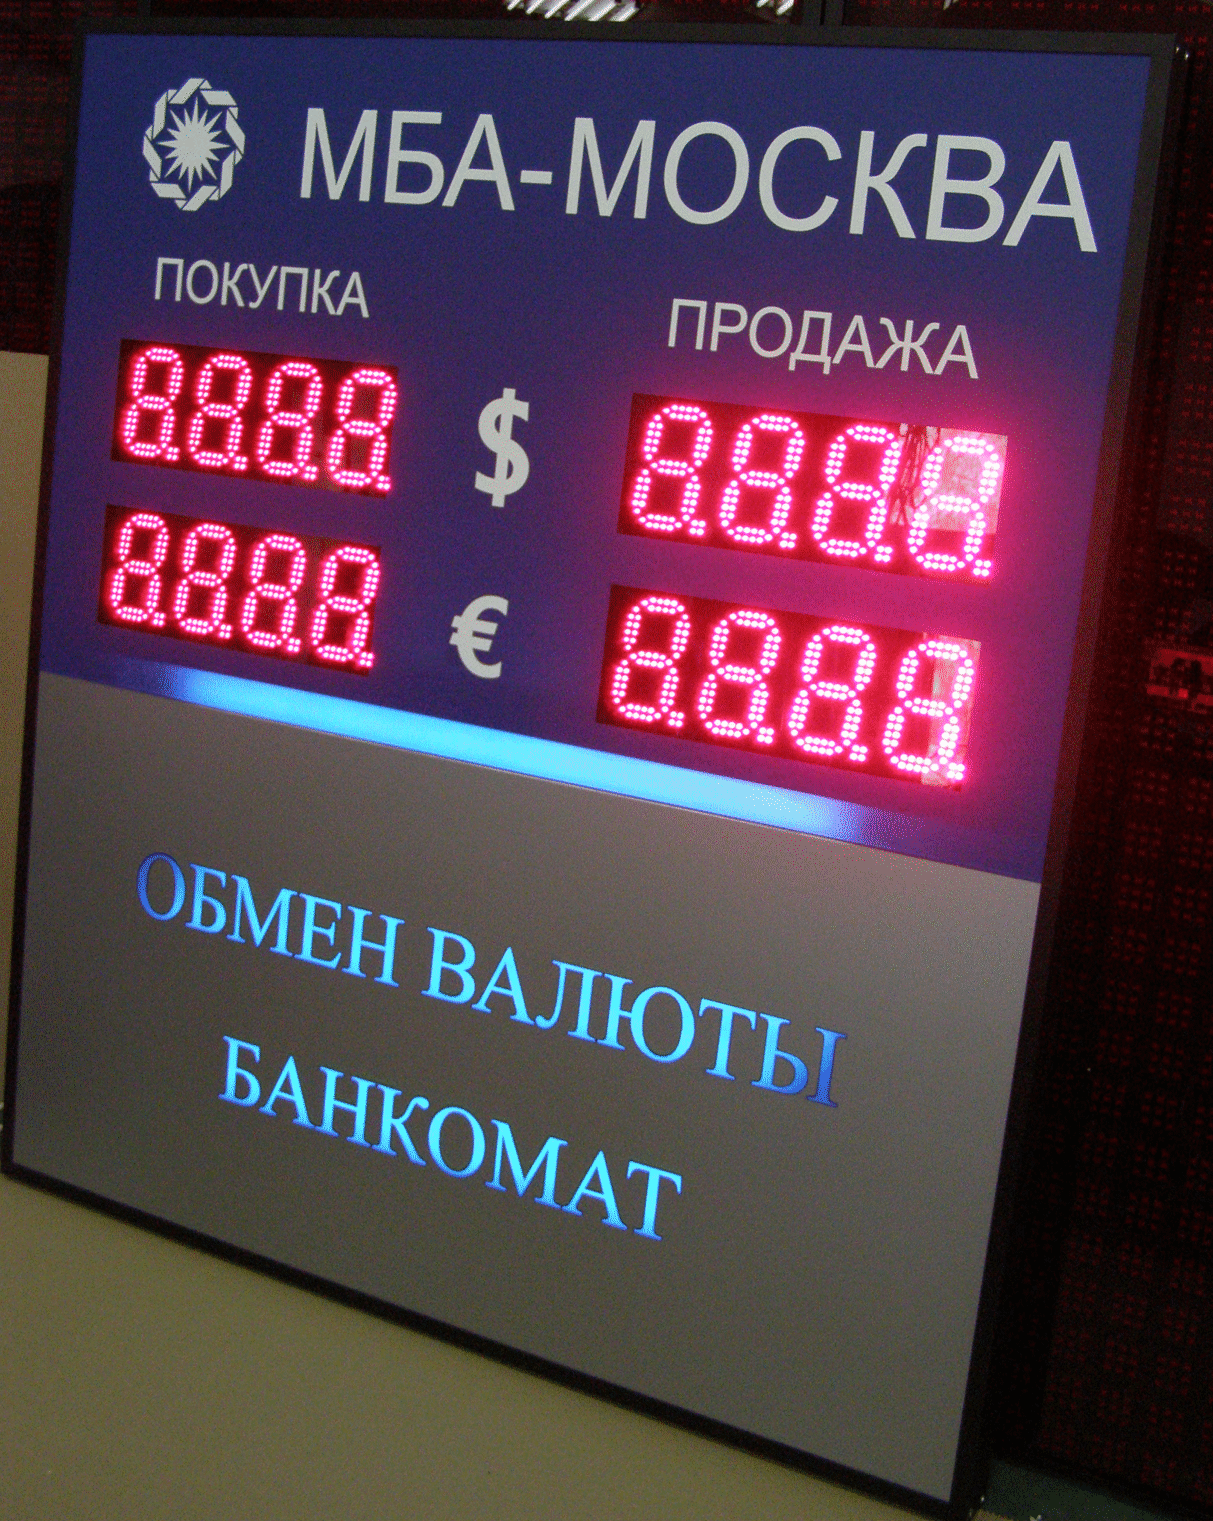 Табло обмена валют МБА-МОСКВА